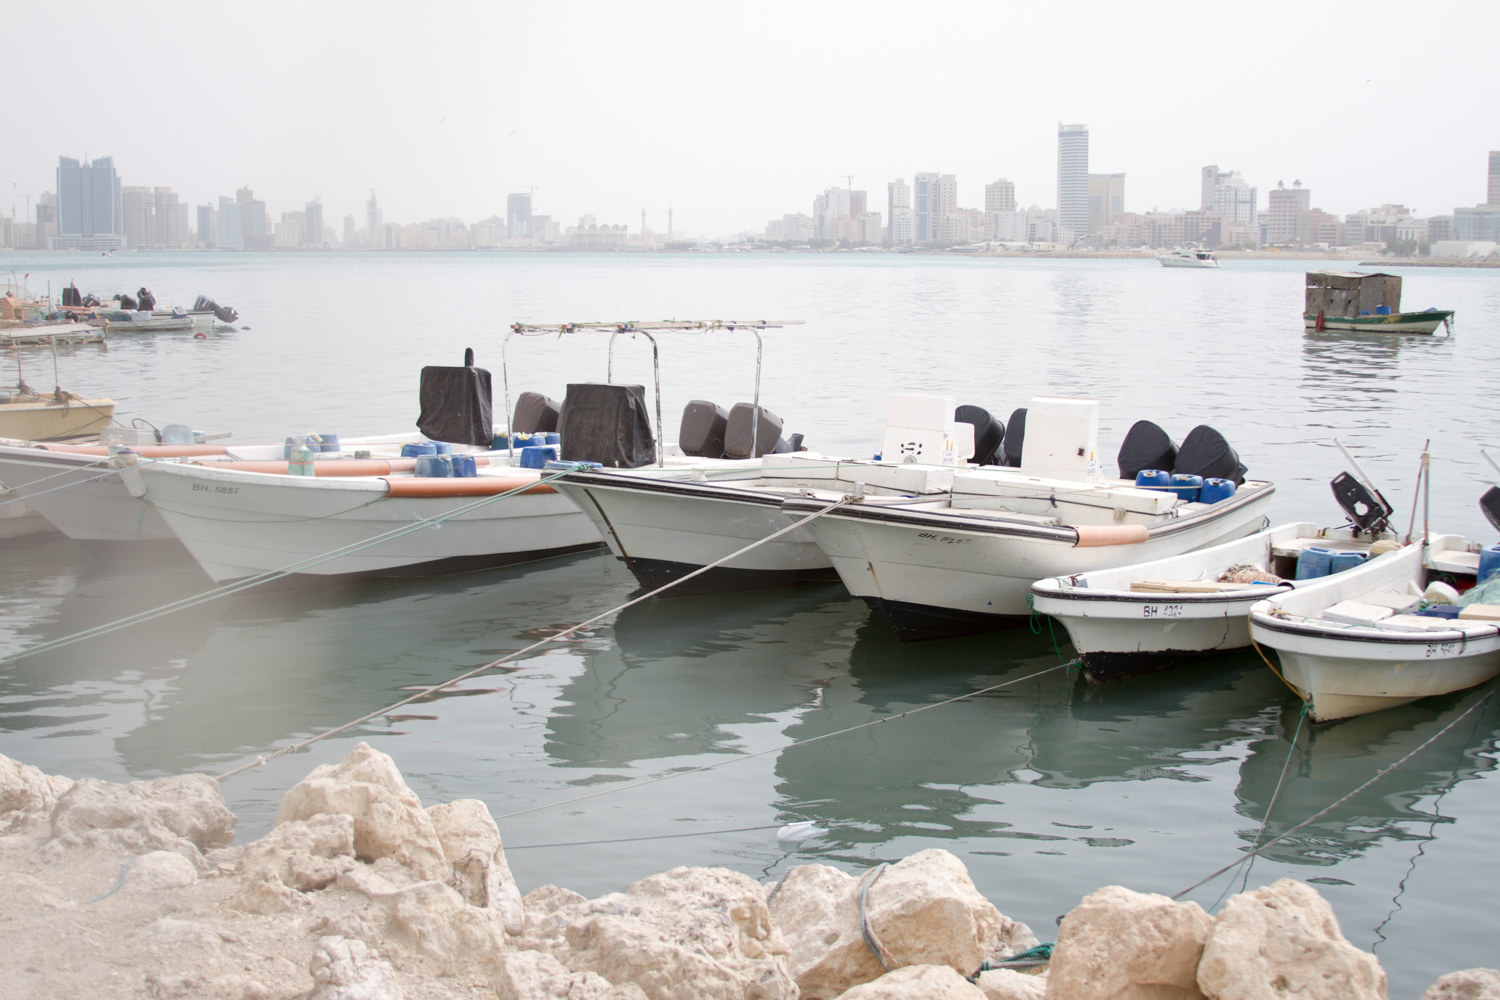 Christian-Schaffer-Bahrain-Boats-Harbor.jpg